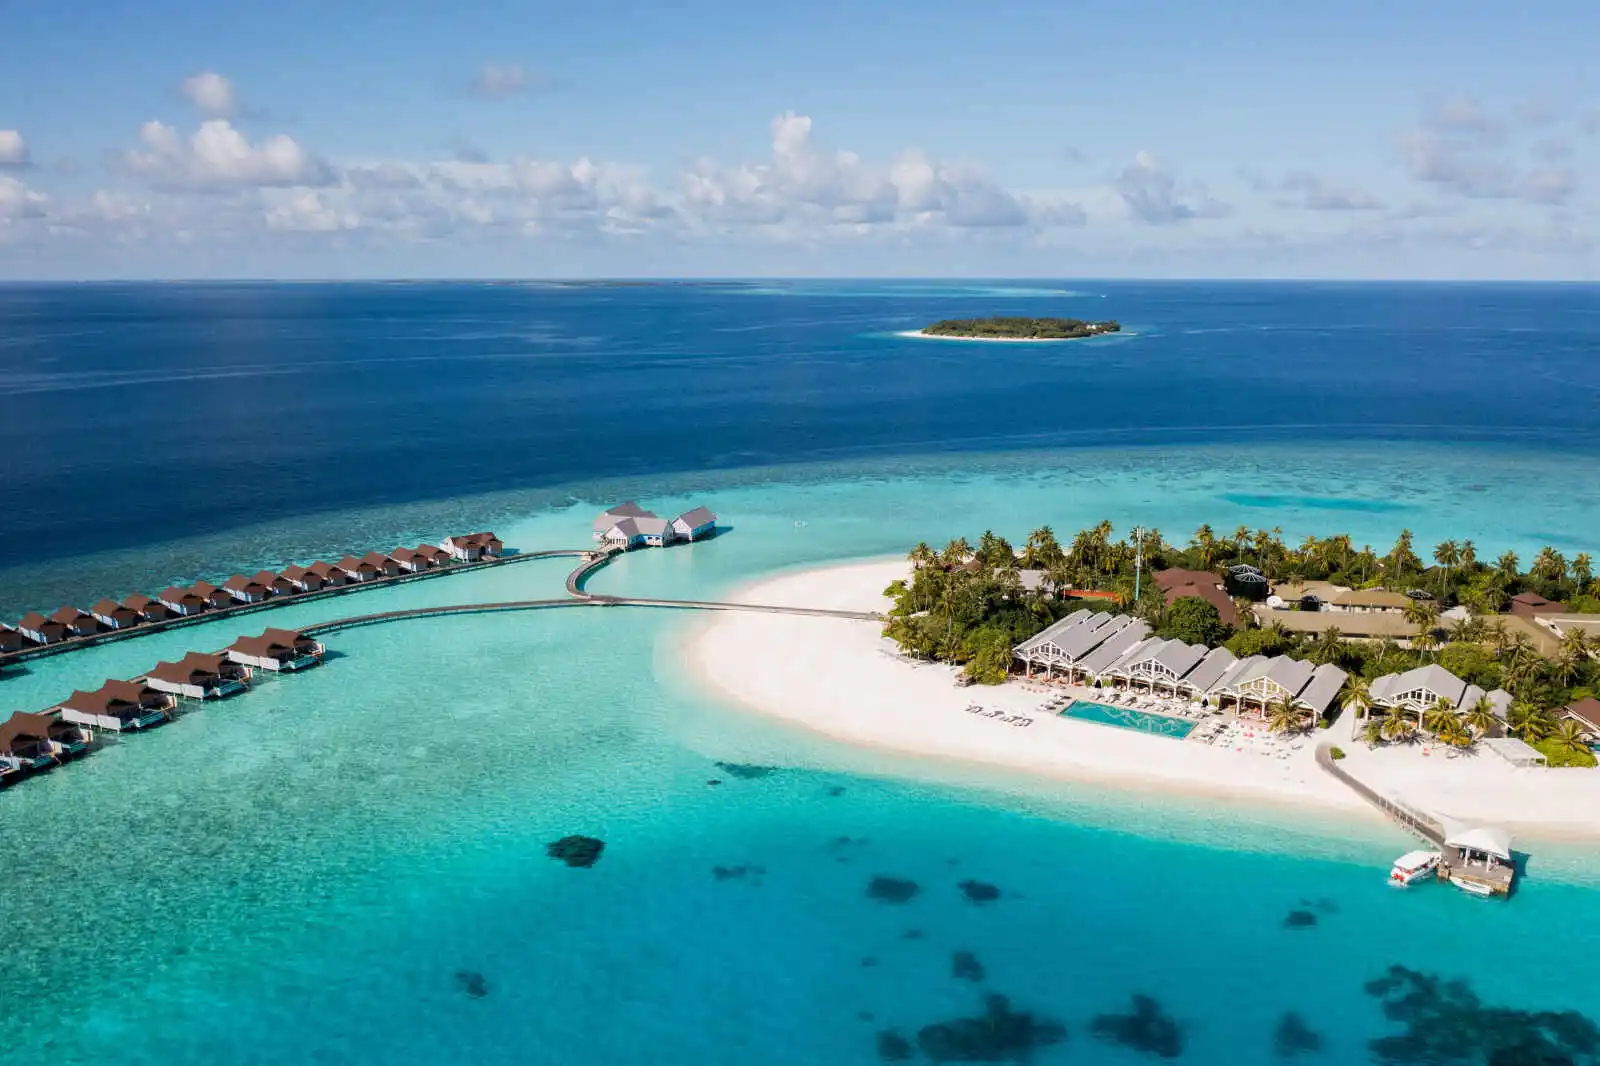 Maldives : The Standard, Huruvalhi Maldives